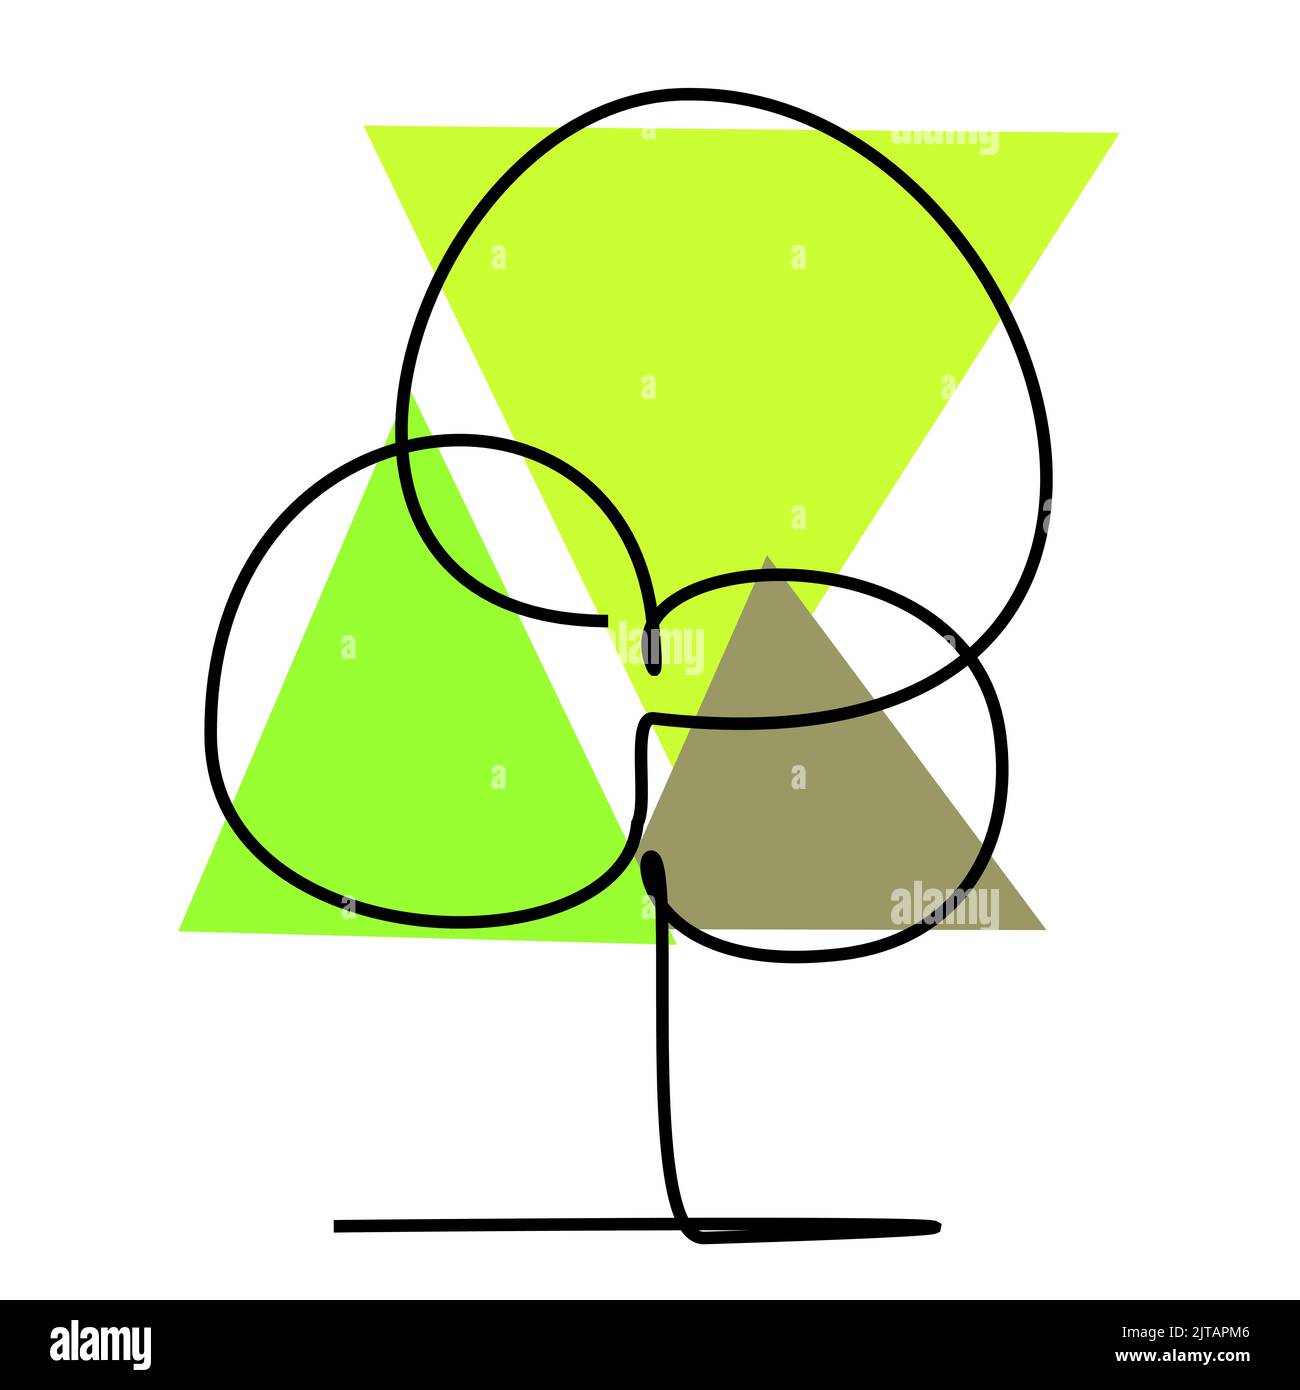 Kontinuierliche einzeilige Zeichnung eines grünen Blattes. Einfache flache farbige Zeichnung für Natur- und Umweltdesign-Konzept Stock Vektor